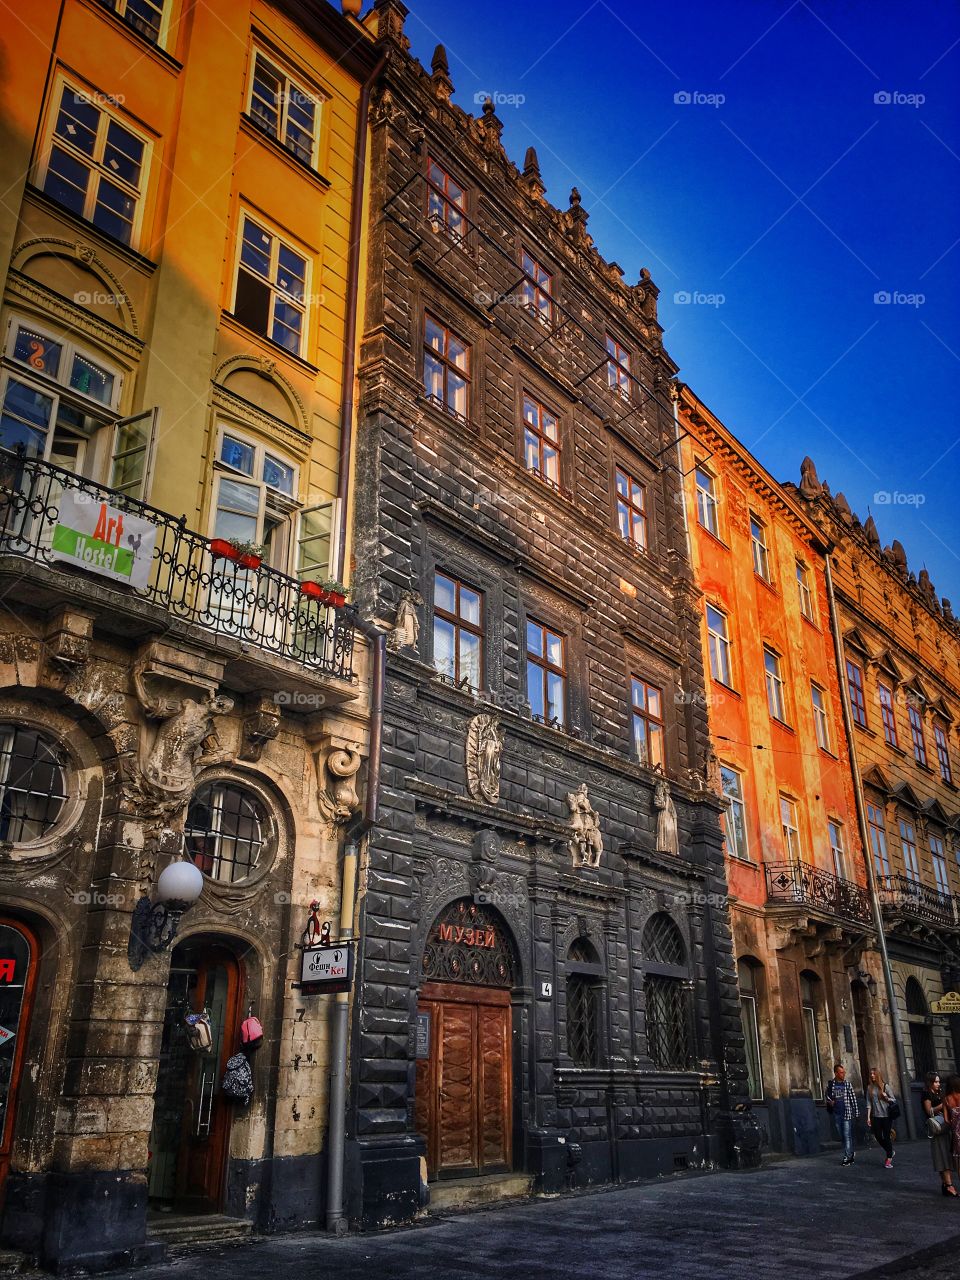 Building in Lviv